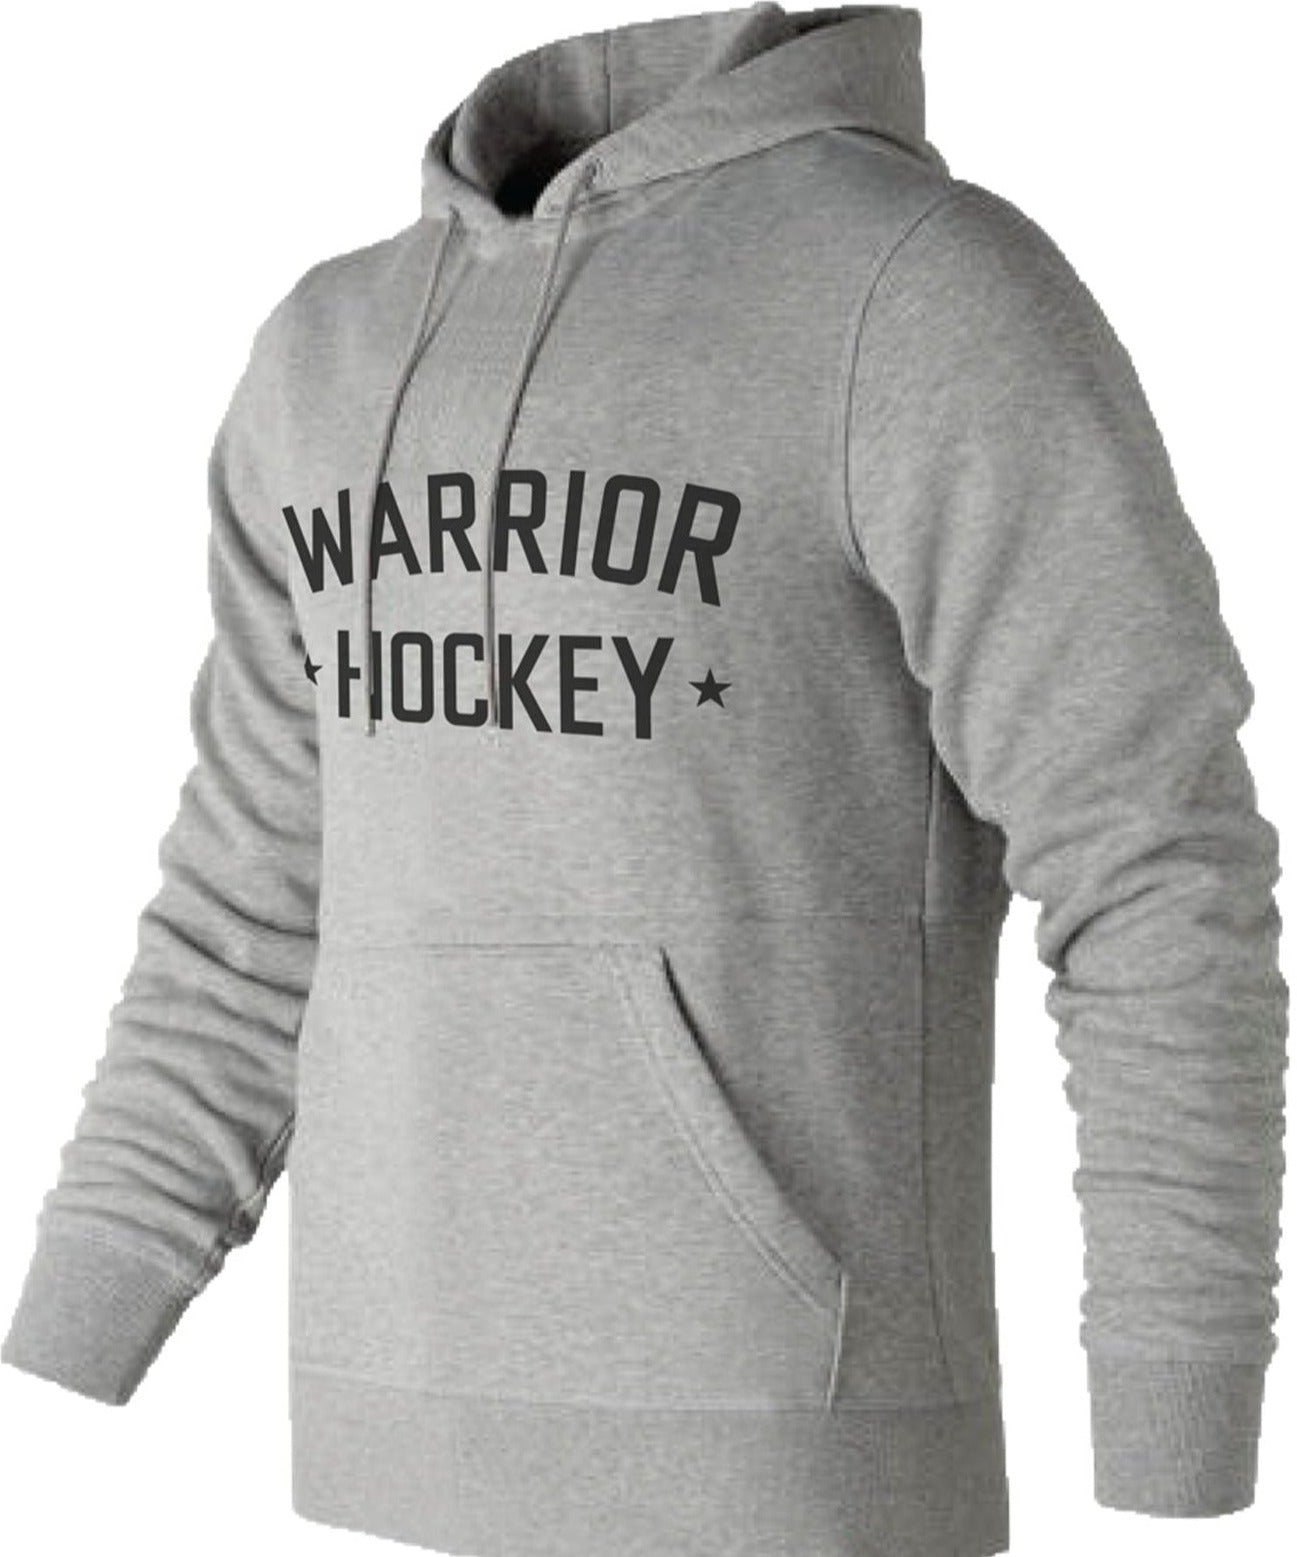 Warrior Hockey Street Pullover Hoodie